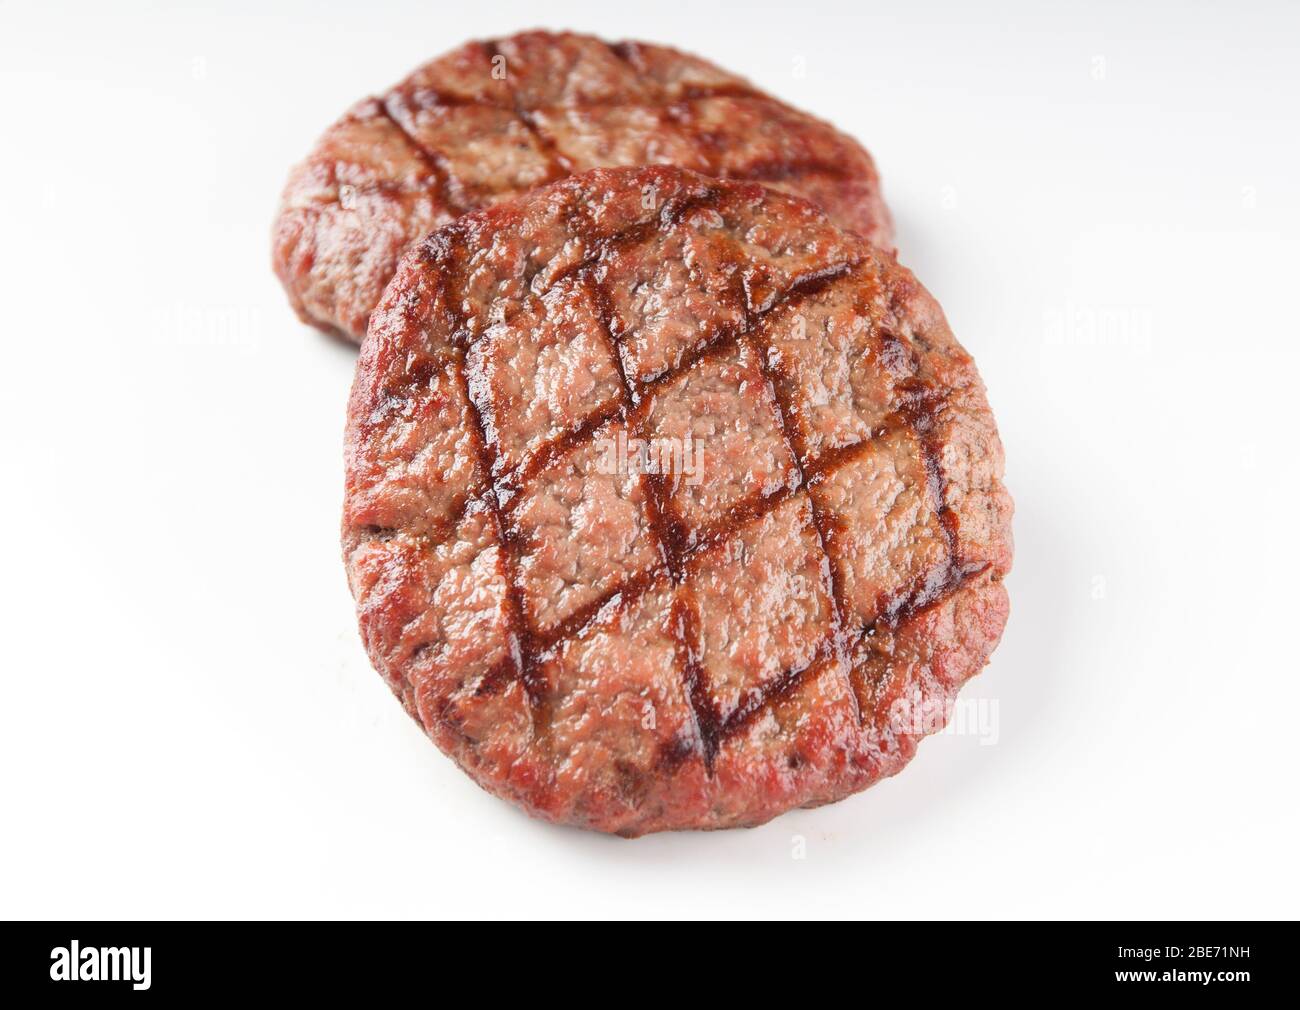 Burger de boeuf grillé savoureux sur fond blanc pour la conception graphique Banque D'Images